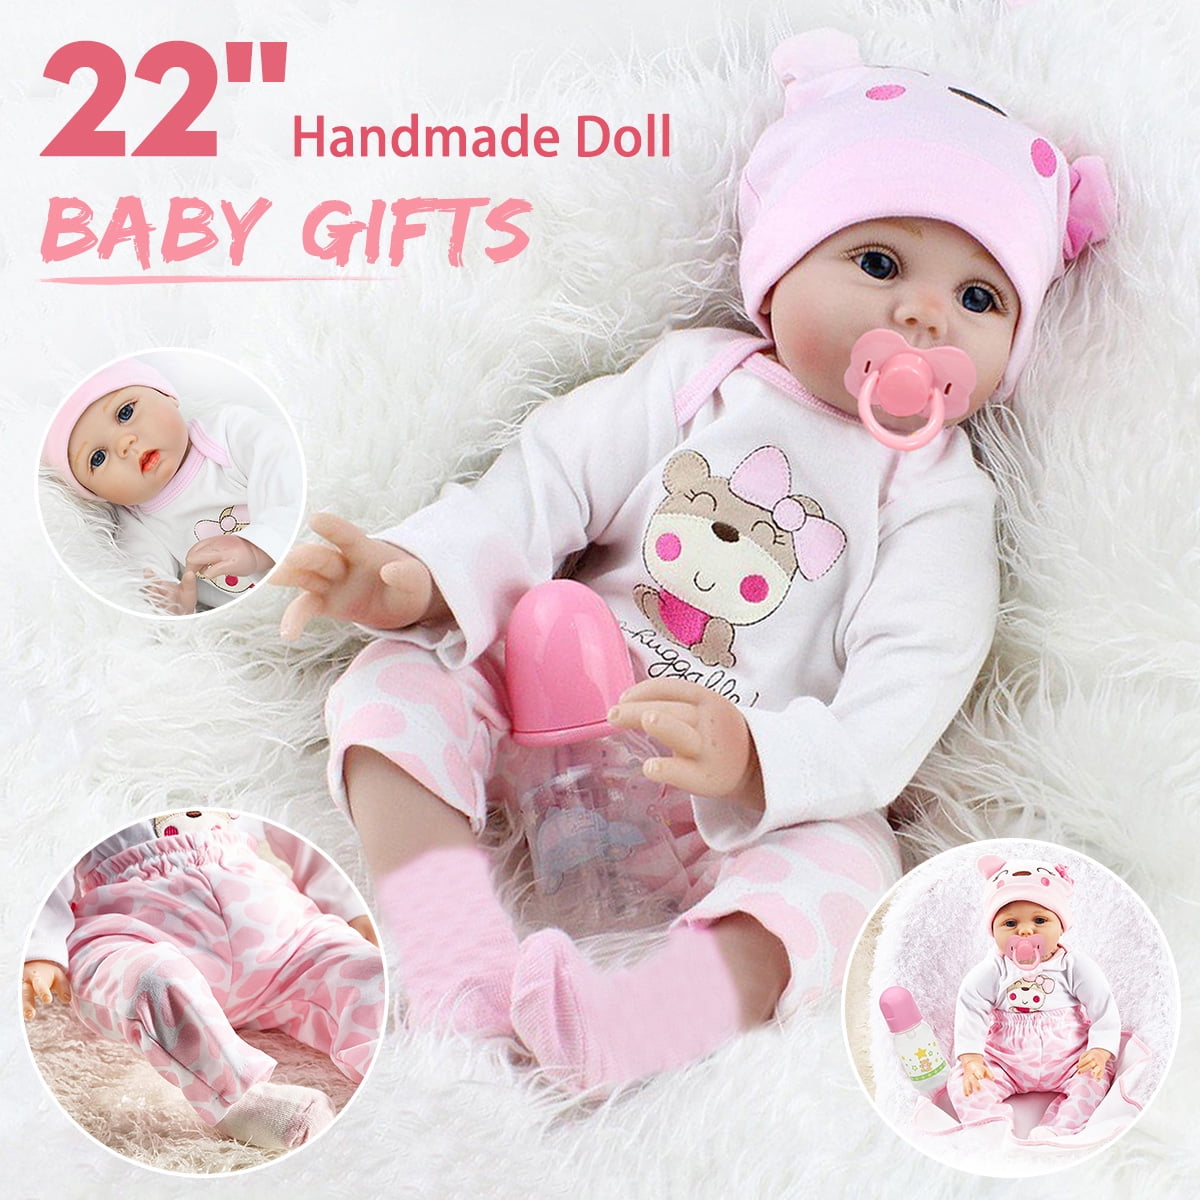 10" Full Body Newborn Lifelike Handmade Silicone Vinyl Reborn Girl Doll Gift 